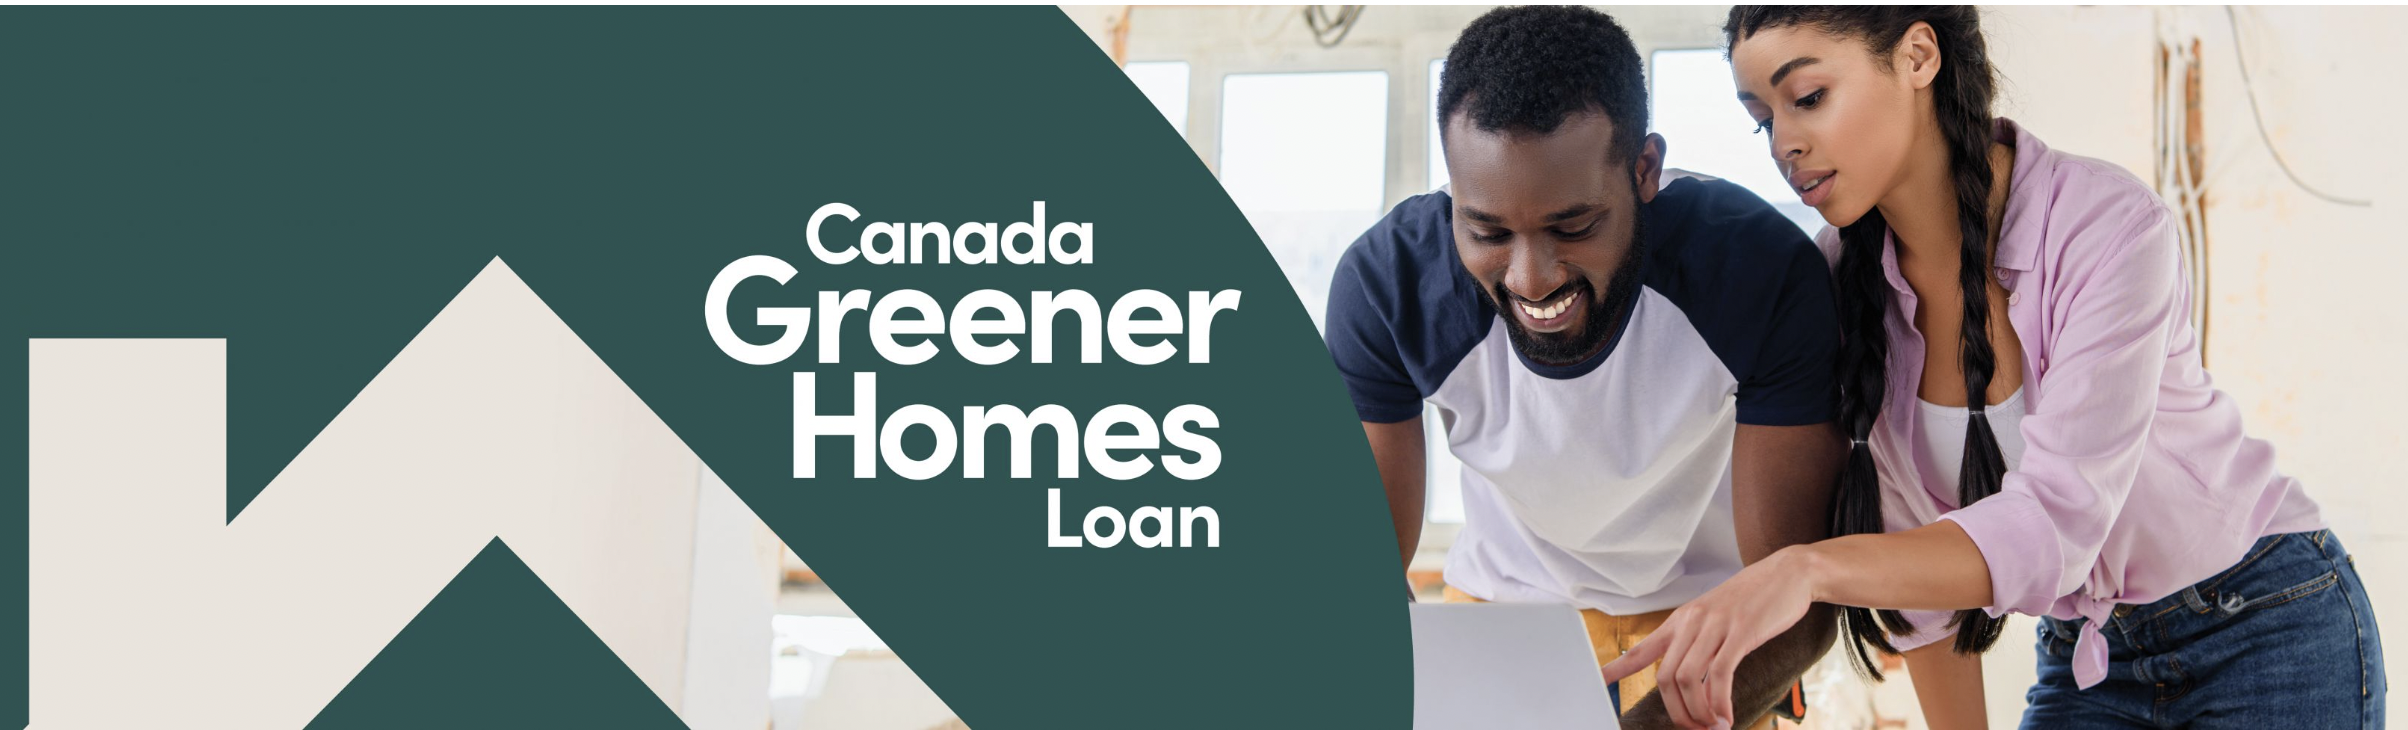 The Canada Greener Homes loan